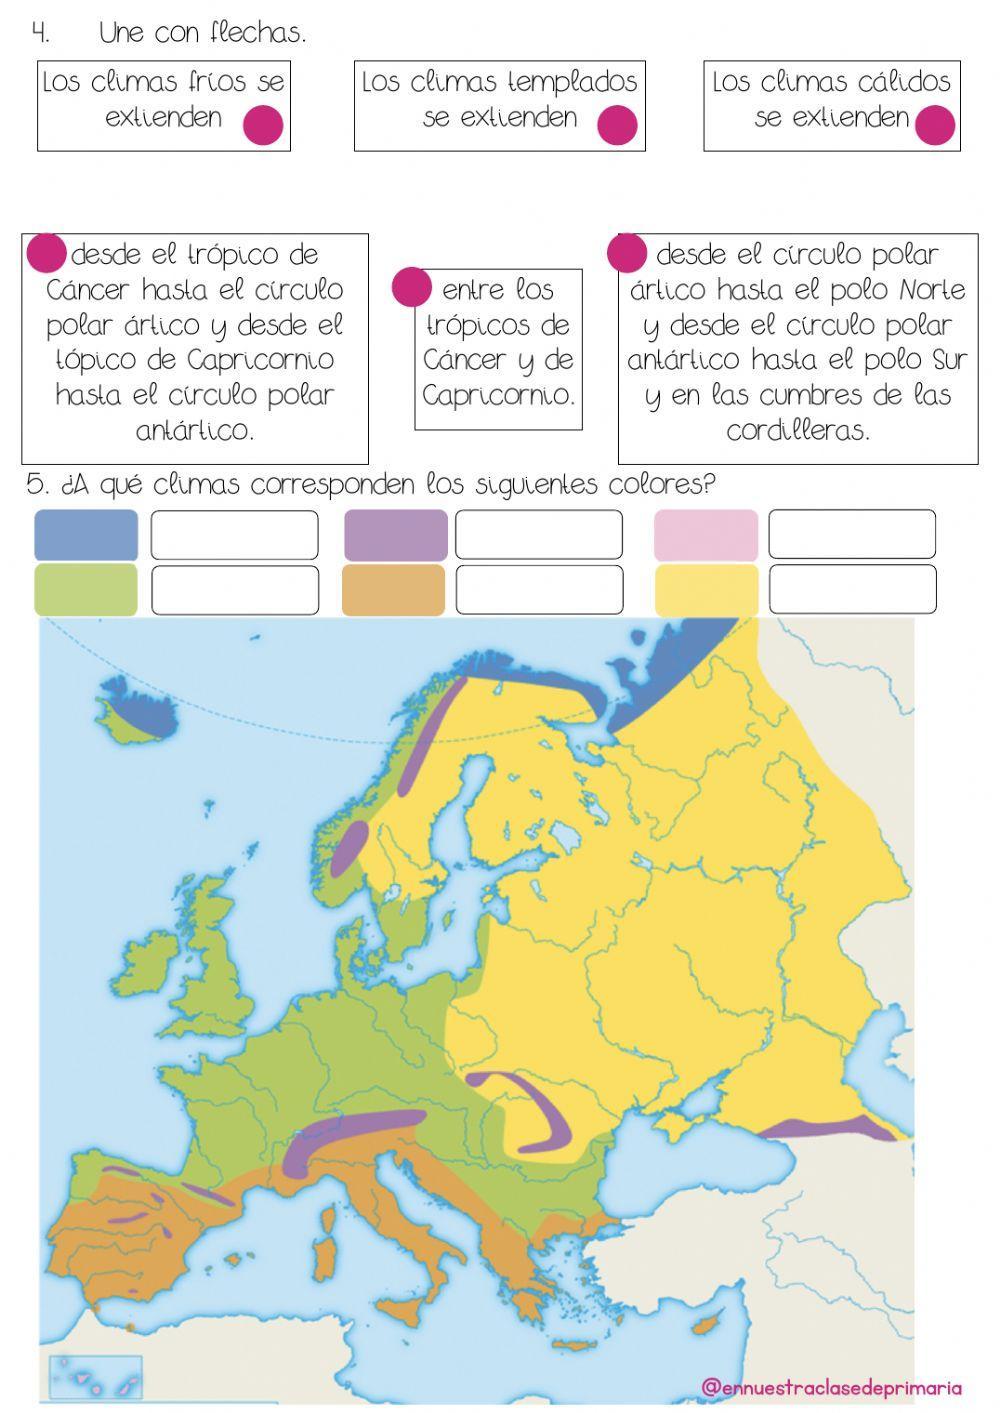 Climas de españa y europa